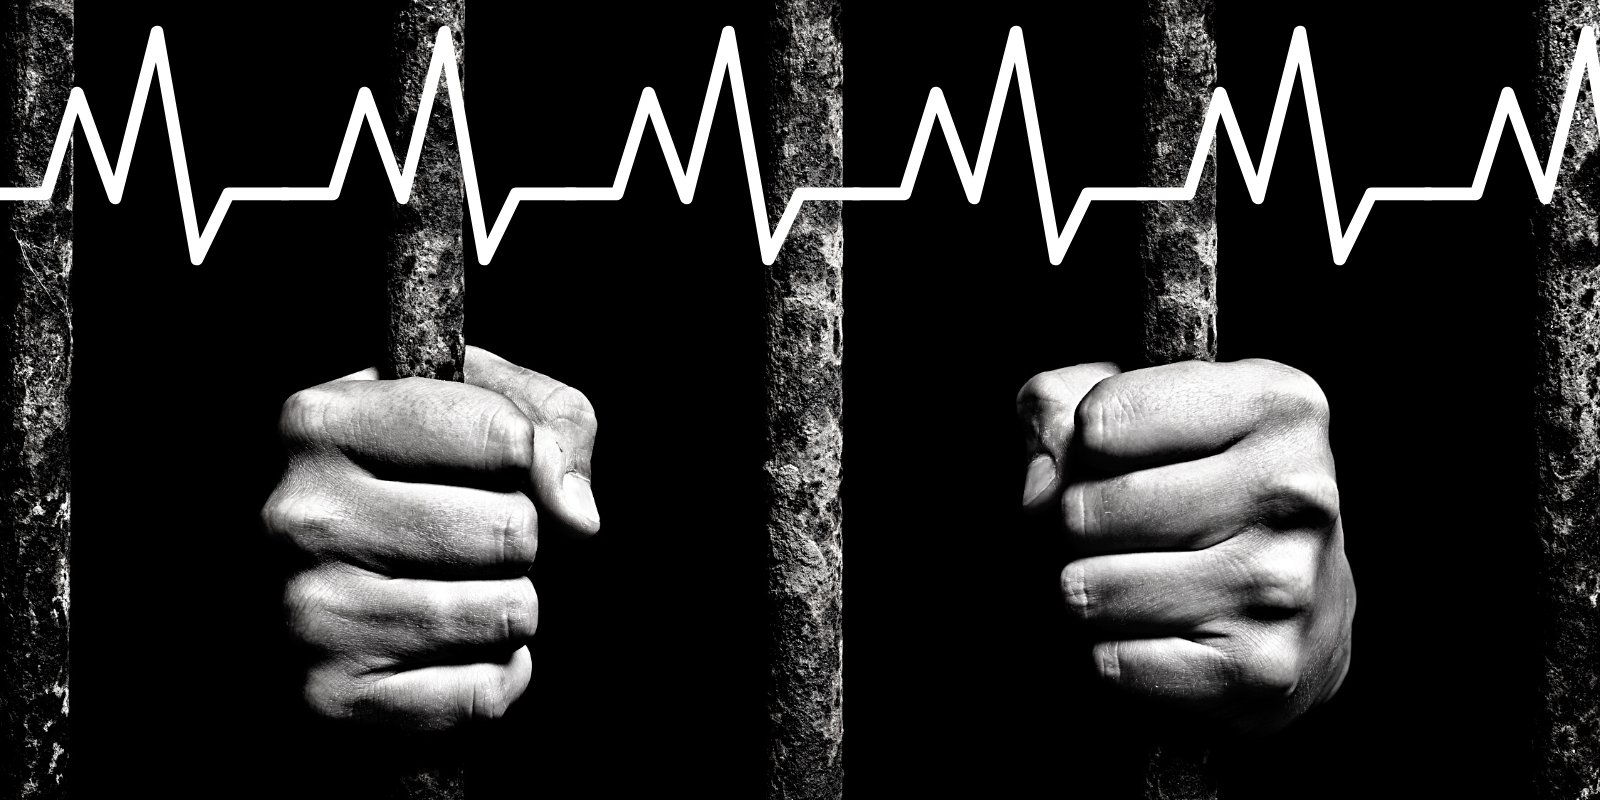 Relatos de familiares acerca del estado de salud de presas y presos políticos en Nicaragua